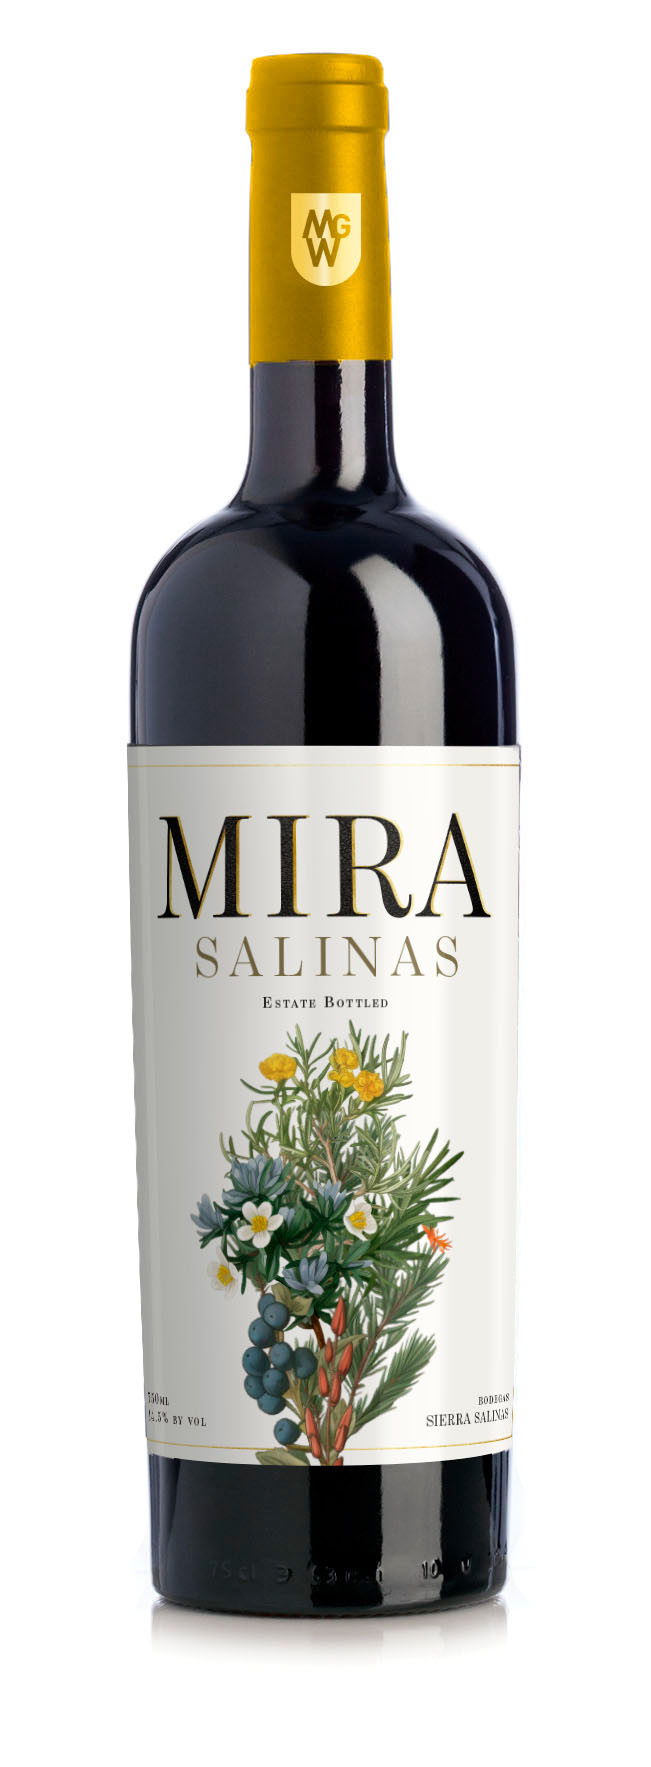 Mira Salinas Bottle Photo